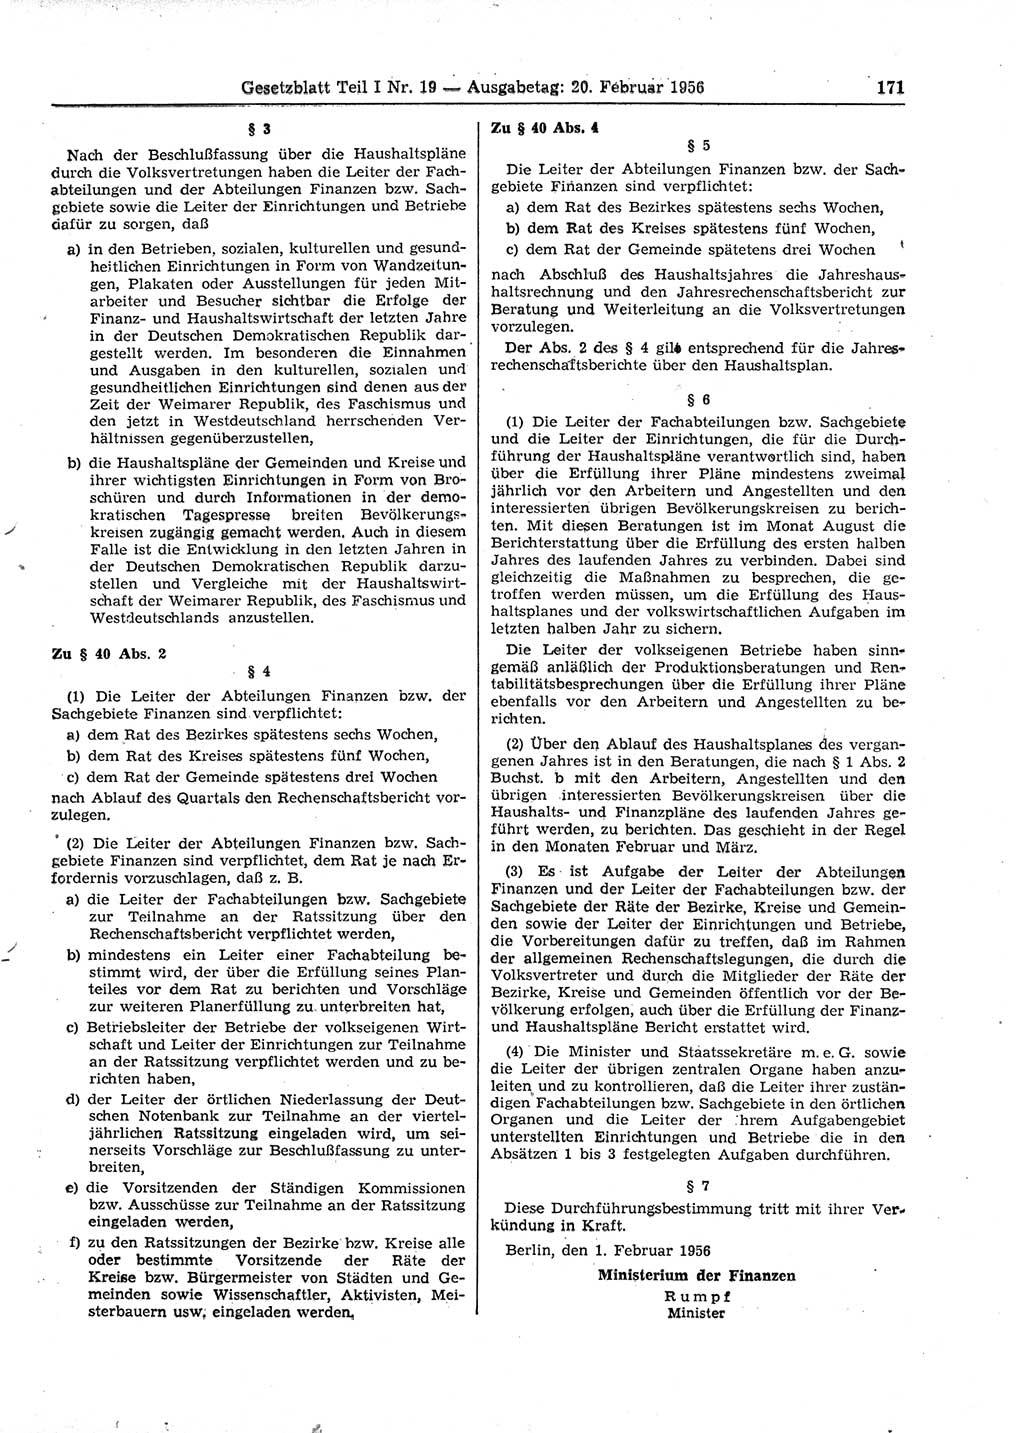 Gesetzblatt (GBl.) der Deutschen Demokratischen Republik (DDR) Teil Ⅰ 1956, Seite 171 (GBl. DDR Ⅰ 1956, S. 171)